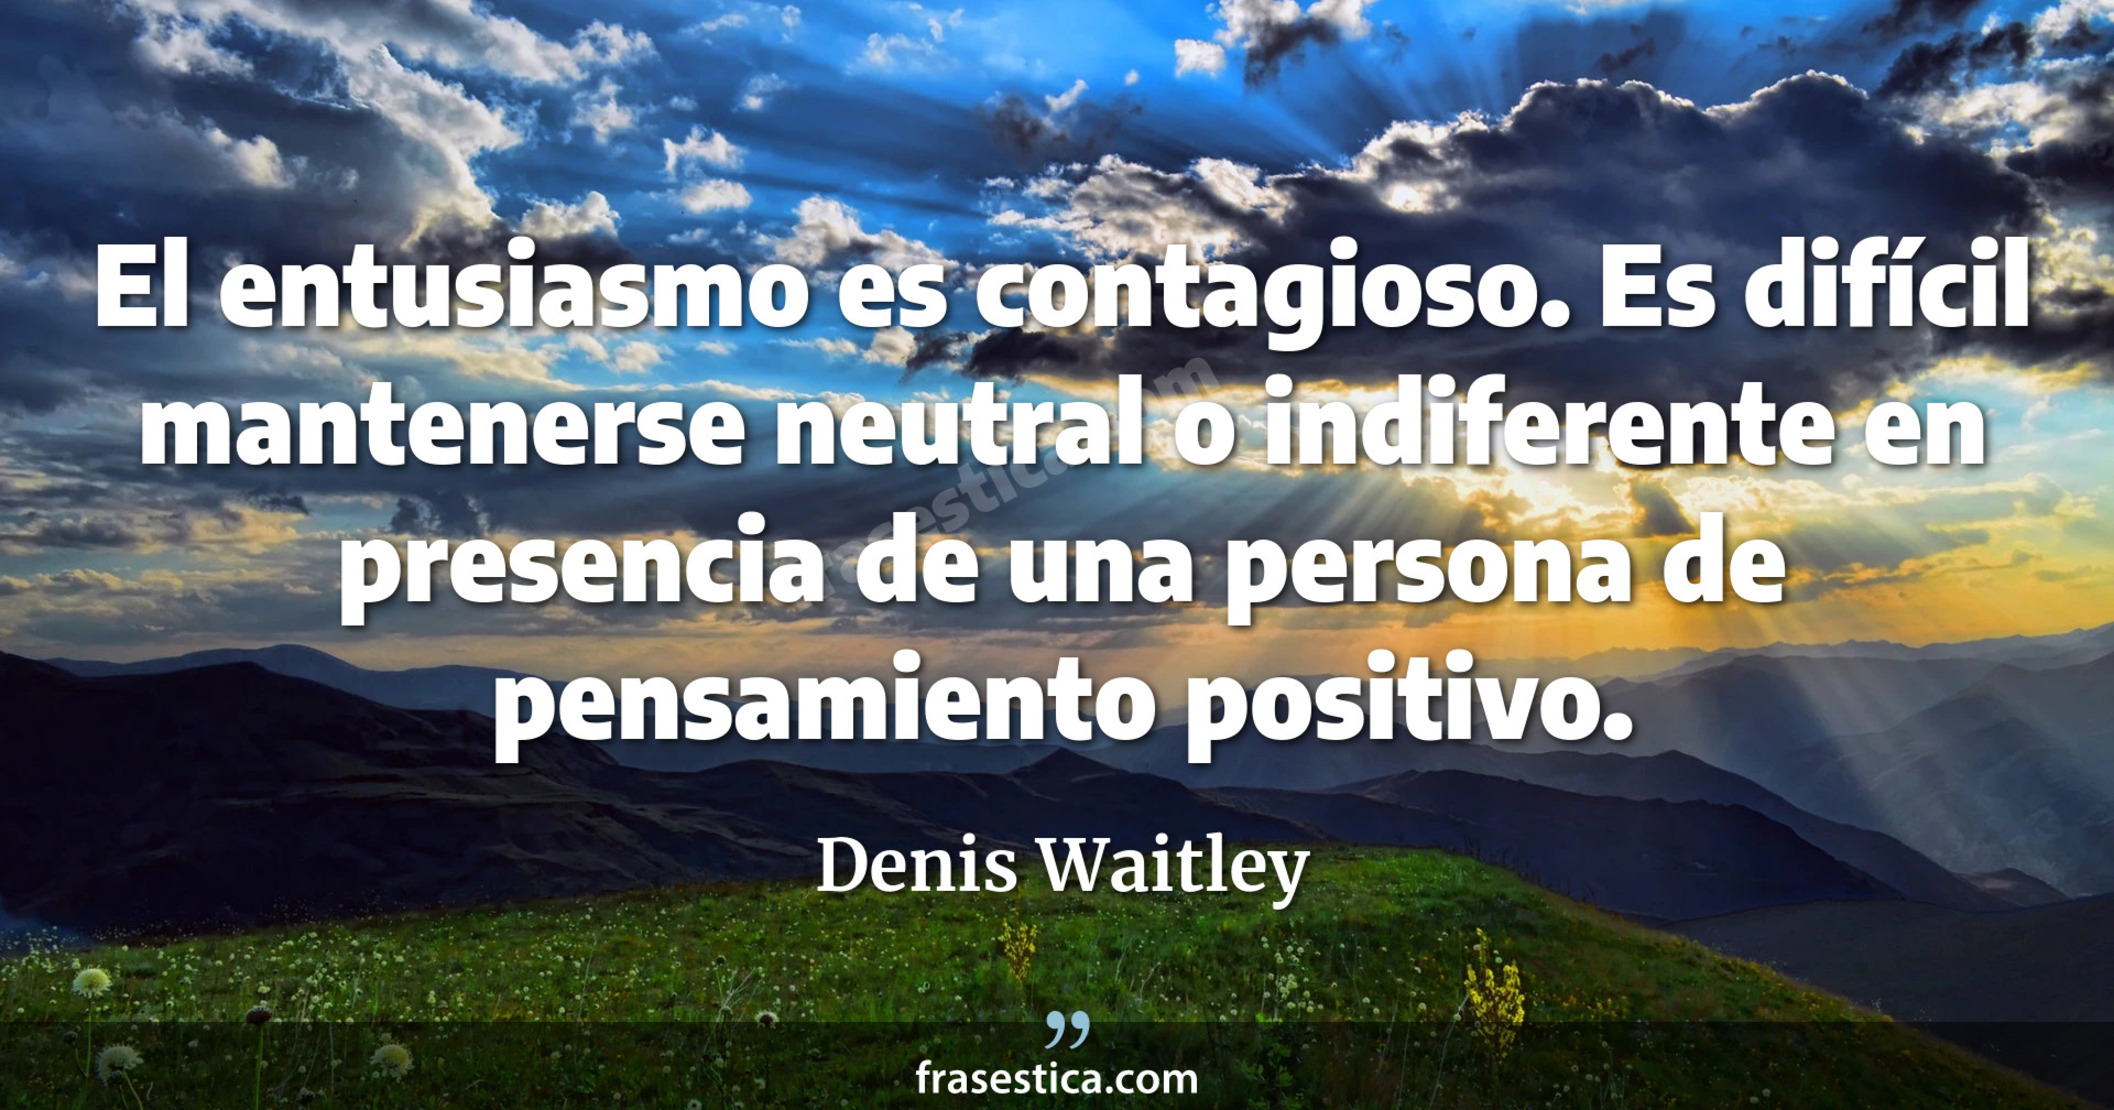 El entusiasmo es contagioso. Es difícil mantenerse neutral o indiferente en presencia de una persona de pensamiento positivo. - Denis Waitley